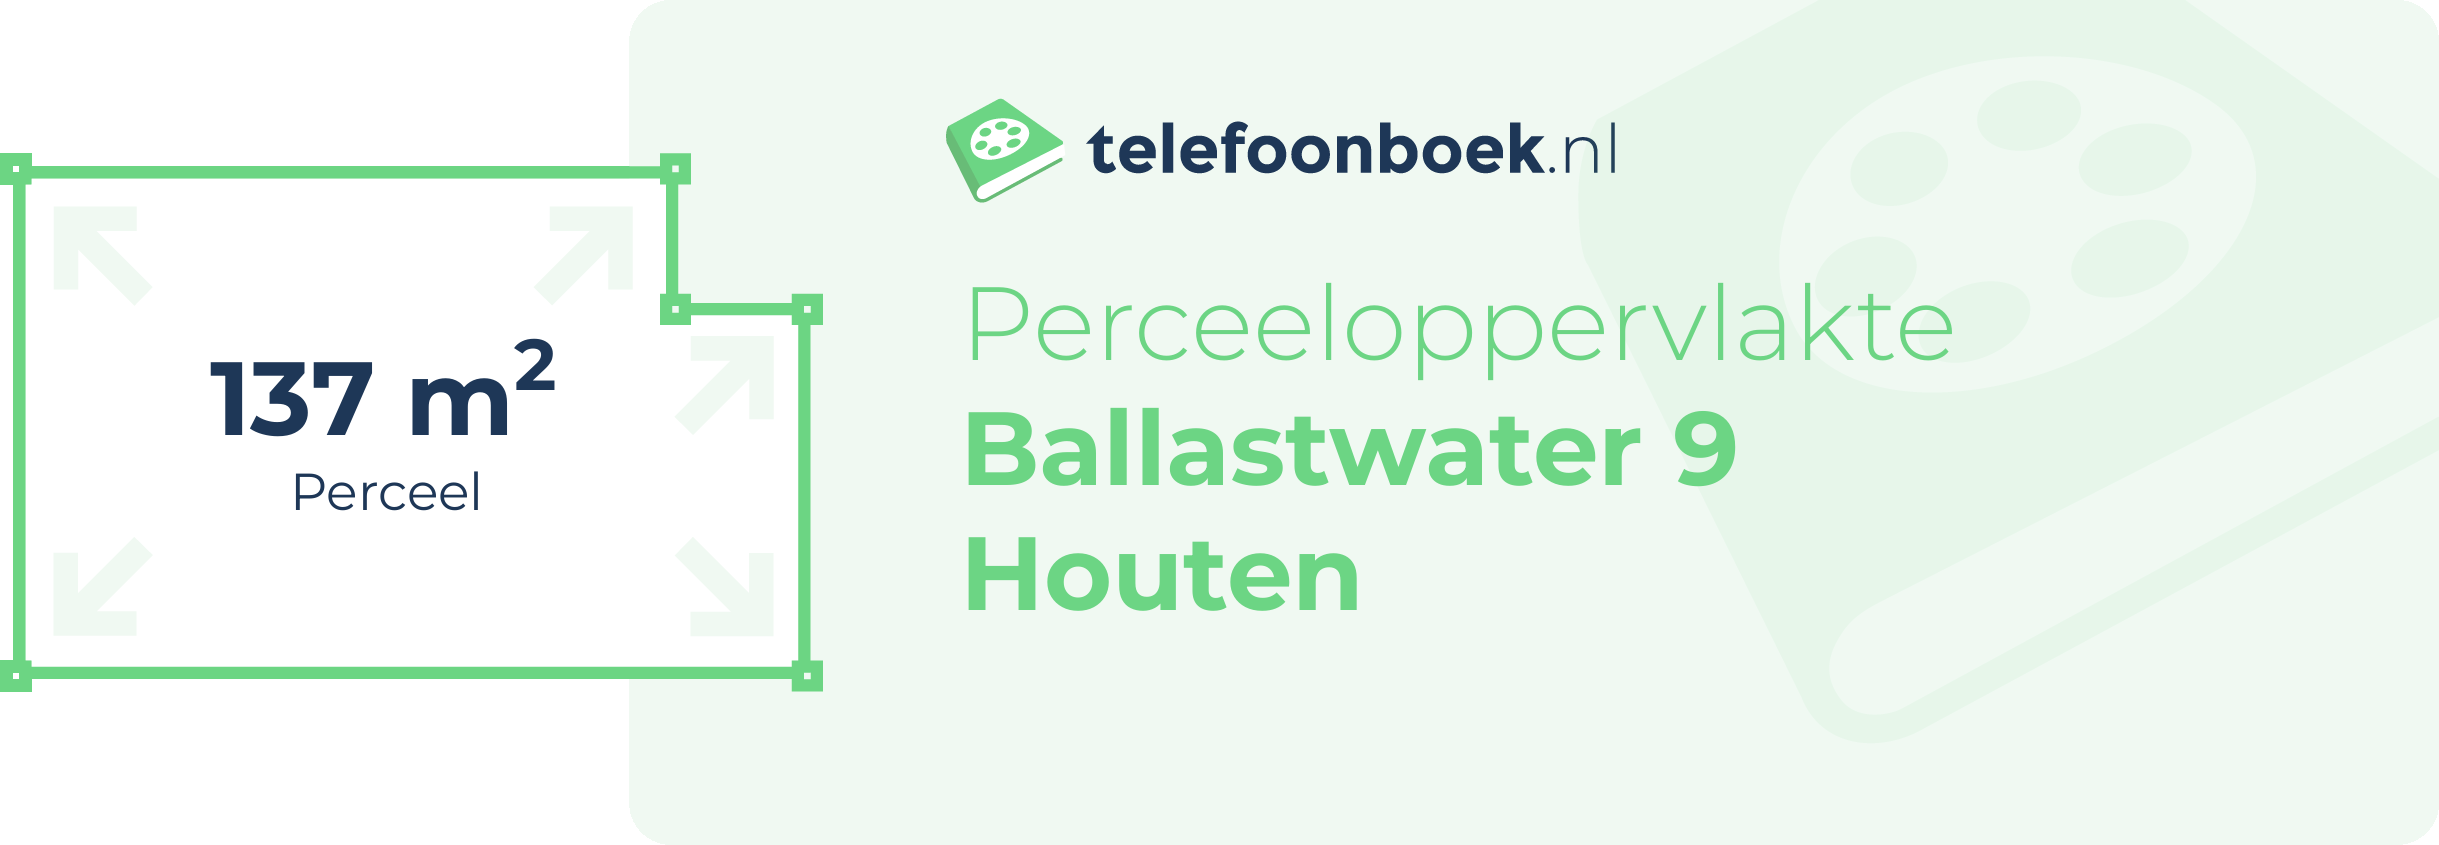 Perceeloppervlakte Ballastwater 9 Houten